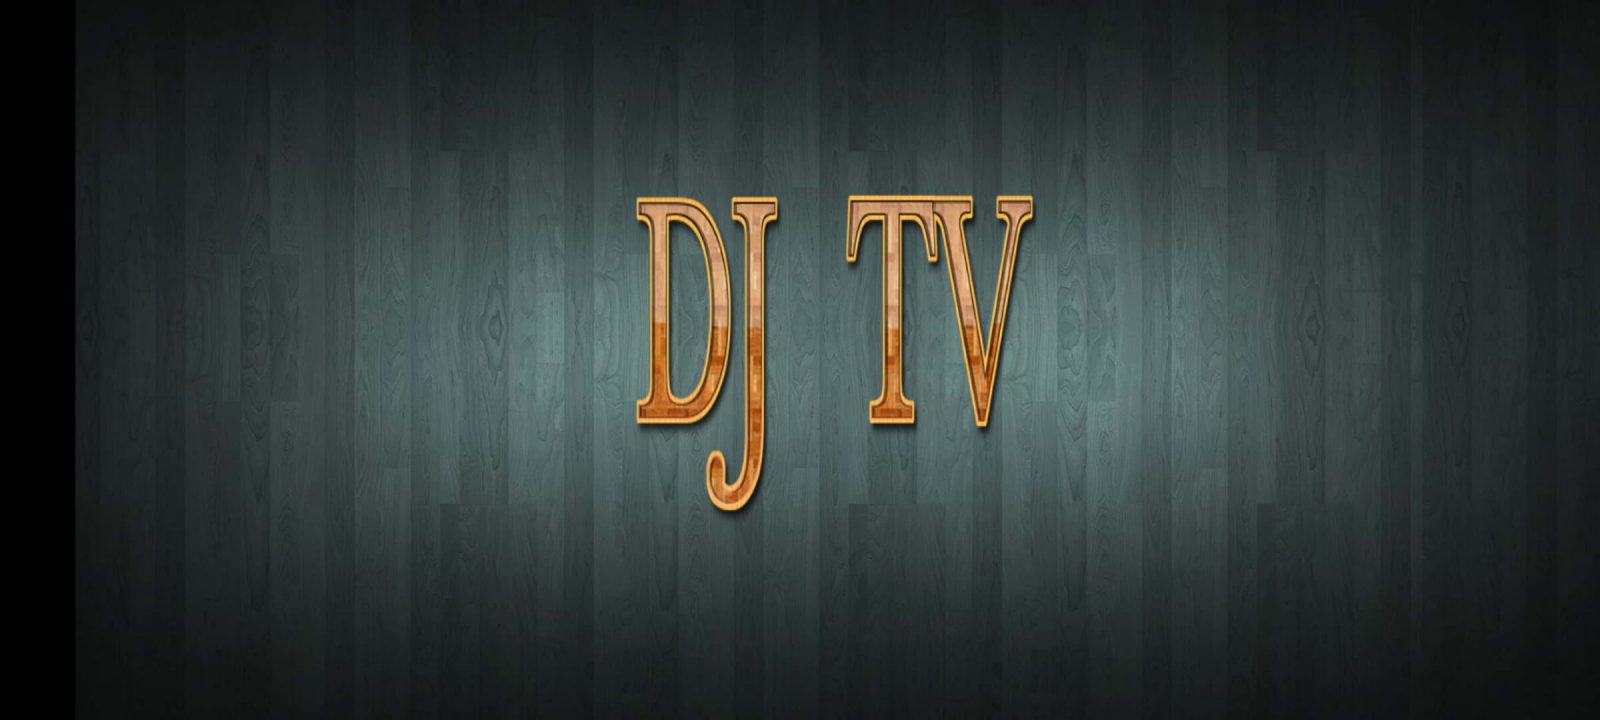 DJ TV IPTV – Review, Setup, & Installation Guide